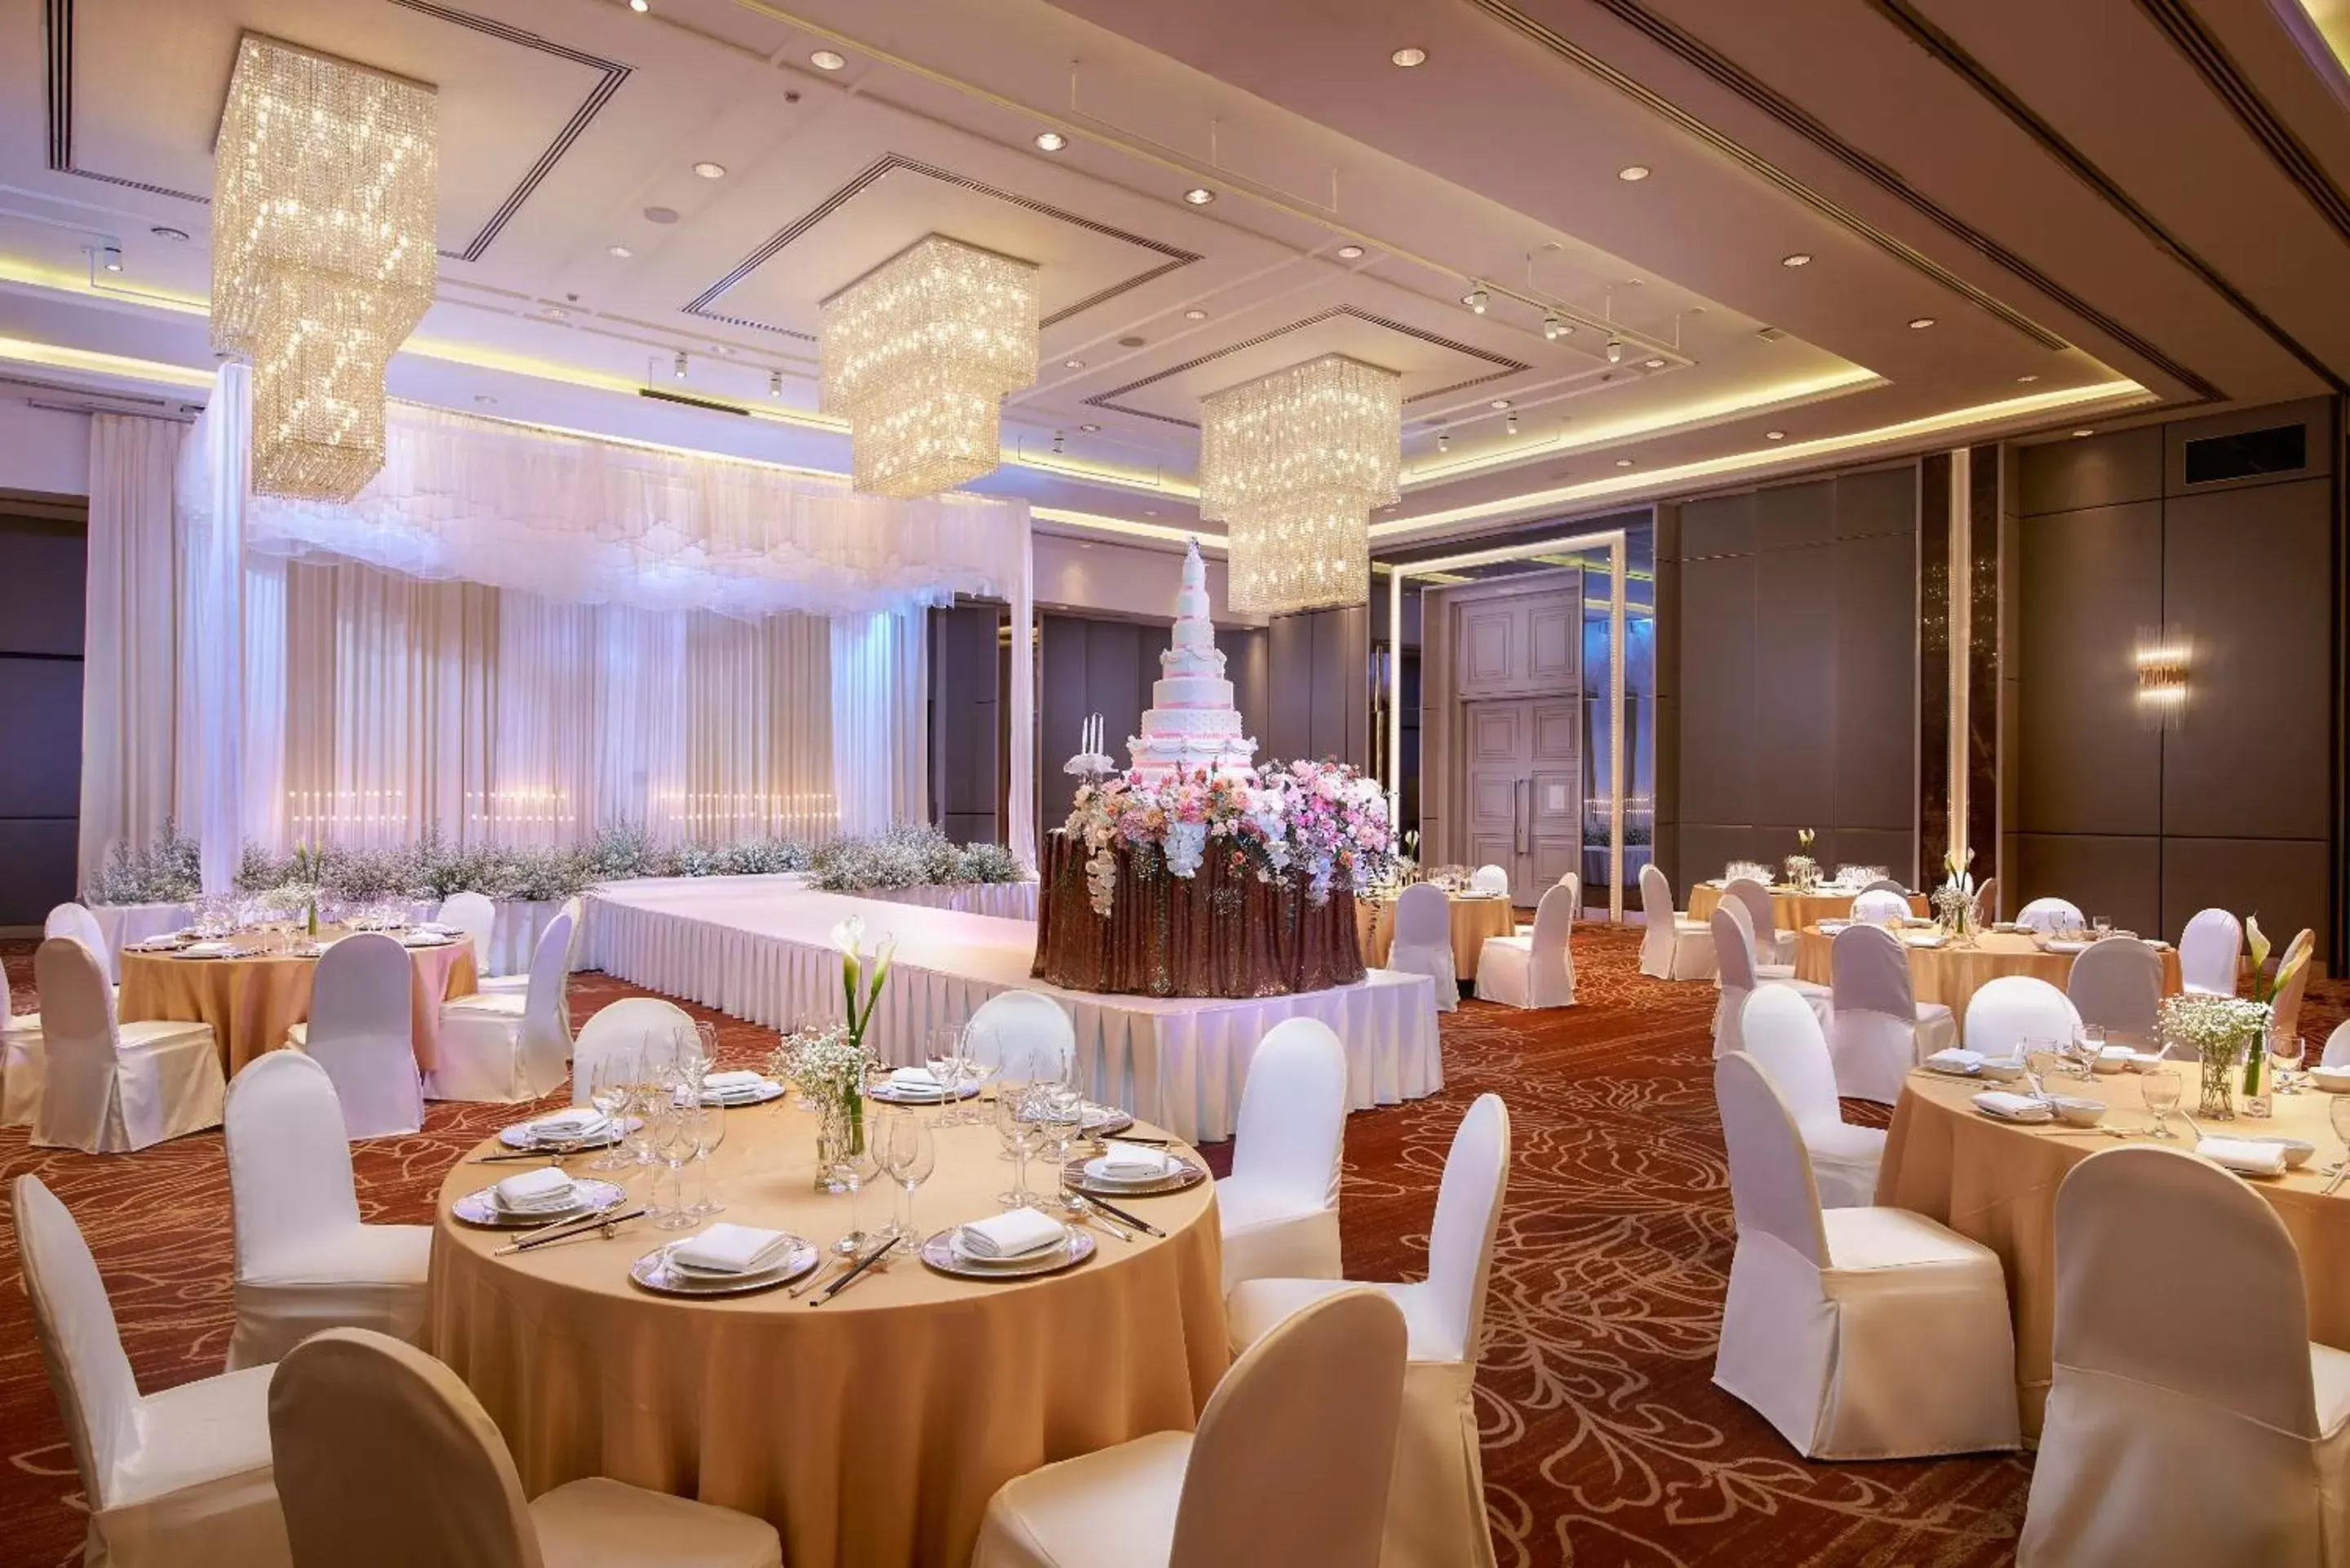 Banquet/Function facilities, Banquet Facilities in Amari Don Muang Airport Bangkok